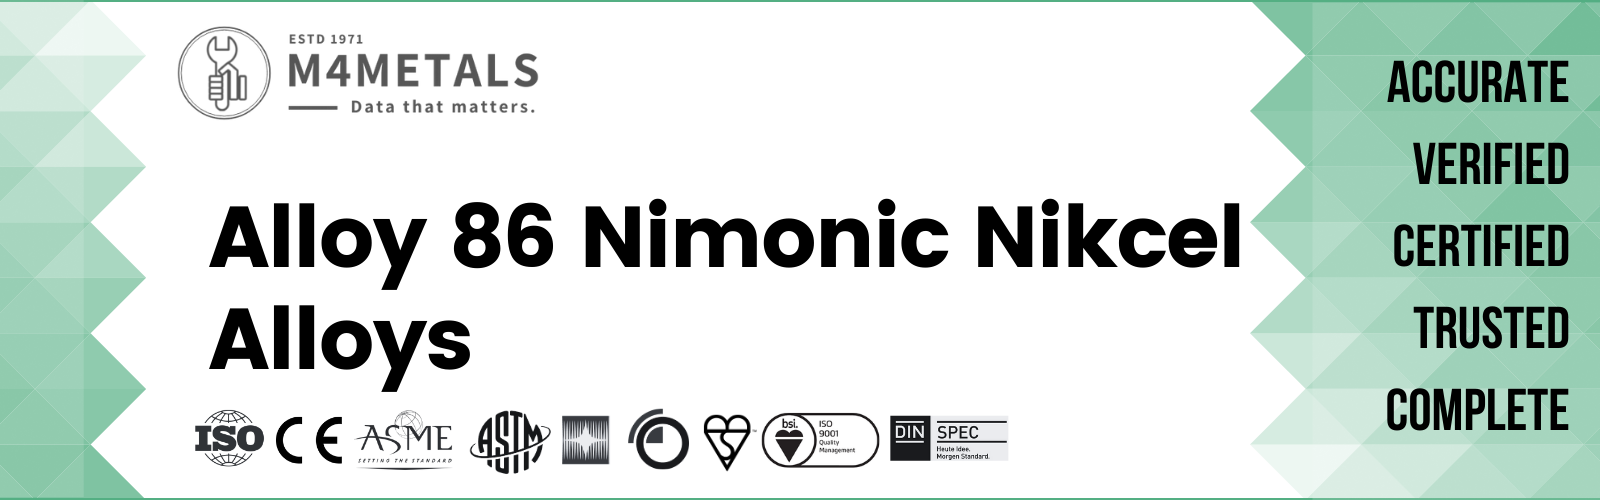 Nimonic Alloy 86